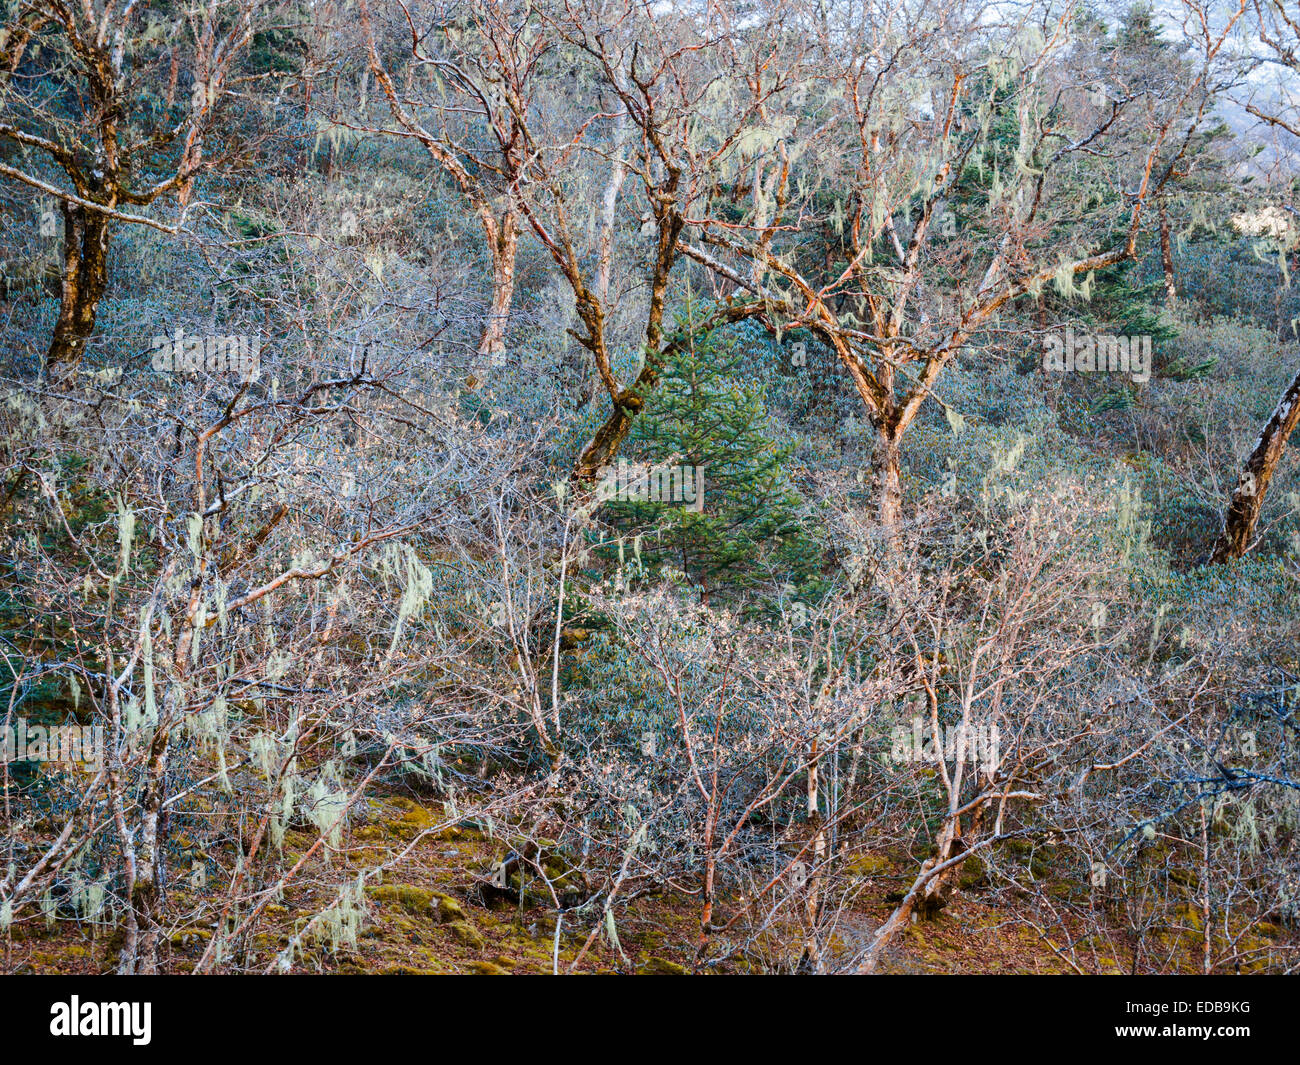 Forêt mixte de bouleau, sapin et rhododendron drapé de mousse espagnole dans le Népal Himalaya Banque D'Images